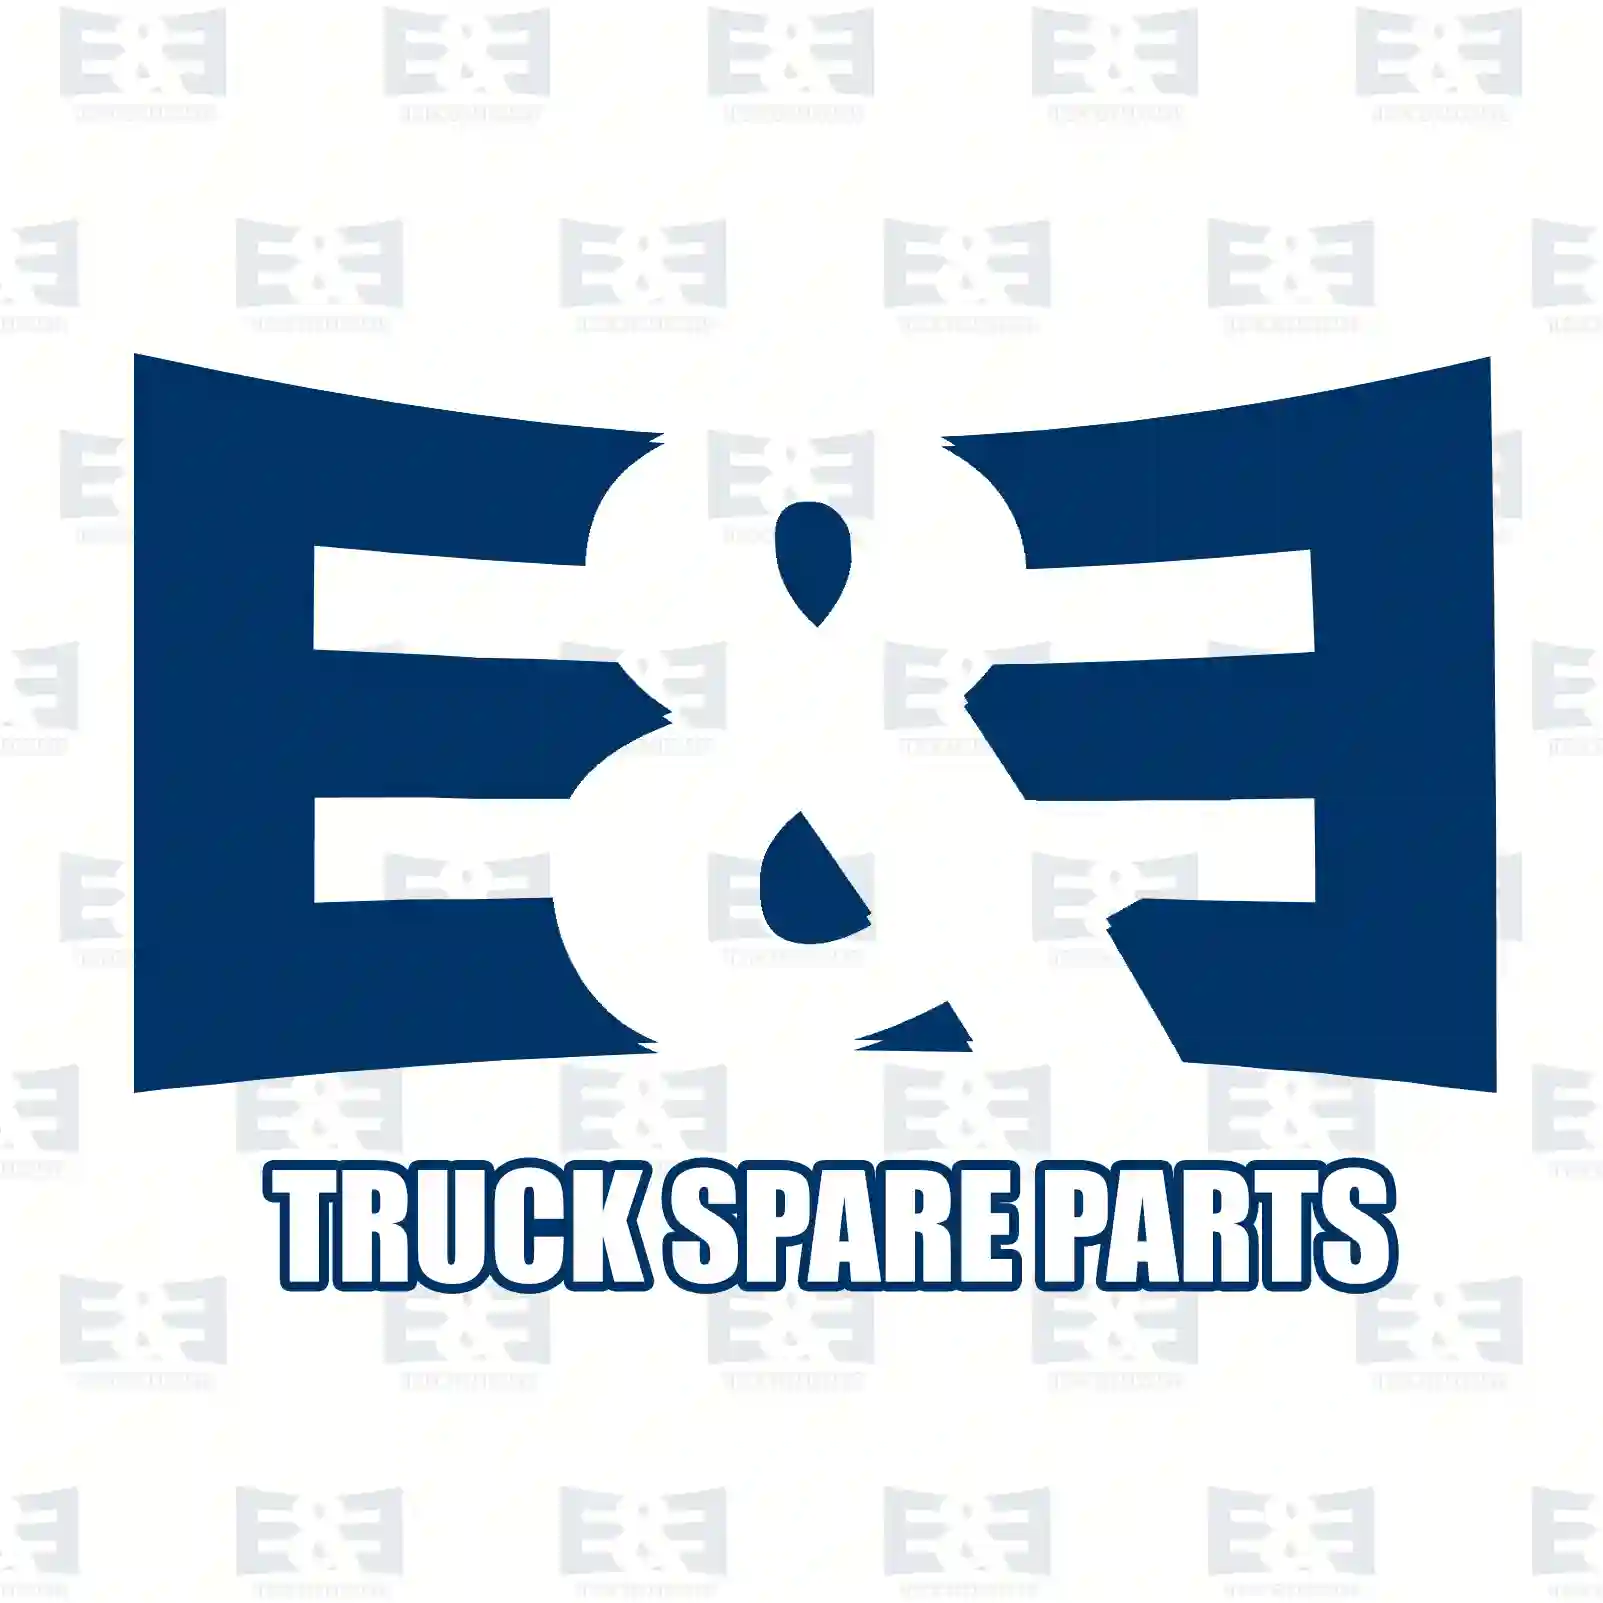 Rear fog lamp glass, 2E2290685, 0906639, 906639, 93191715, 93191715, 506000001, 62008940, 571116708, 81252290785, 0015449490, 011025265, 150320302, 150320502, 20044855S, 79100810703 ||  2E2290685 E&E Truck Spare Parts | Truck Spare Parts, Auotomotive Spare Parts Rear fog lamp glass, 2E2290685, 0906639, 906639, 93191715, 93191715, 506000001, 62008940, 571116708, 81252290785, 0015449490, 011025265, 150320302, 150320502, 20044855S, 79100810703 ||  2E2290685 E&E Truck Spare Parts | Truck Spare Parts, Auotomotive Spare Parts